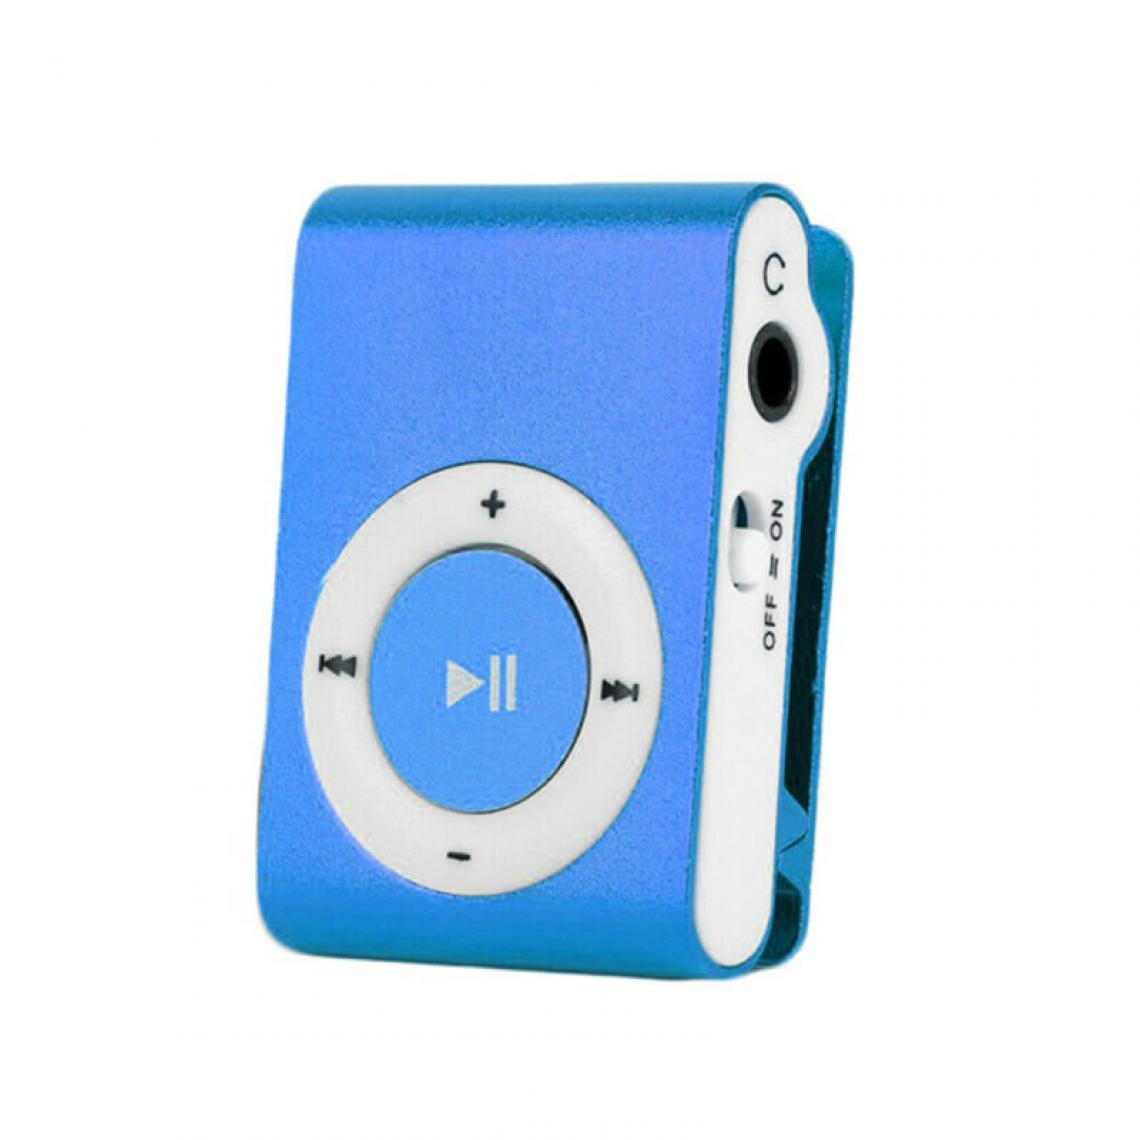 Universal - (bleu) micro SD lecteur mp3 portable mini lecteur mp3 clip USB lecteur de musique micro carte SD - Radio, lecteur CD/MP3 enfant